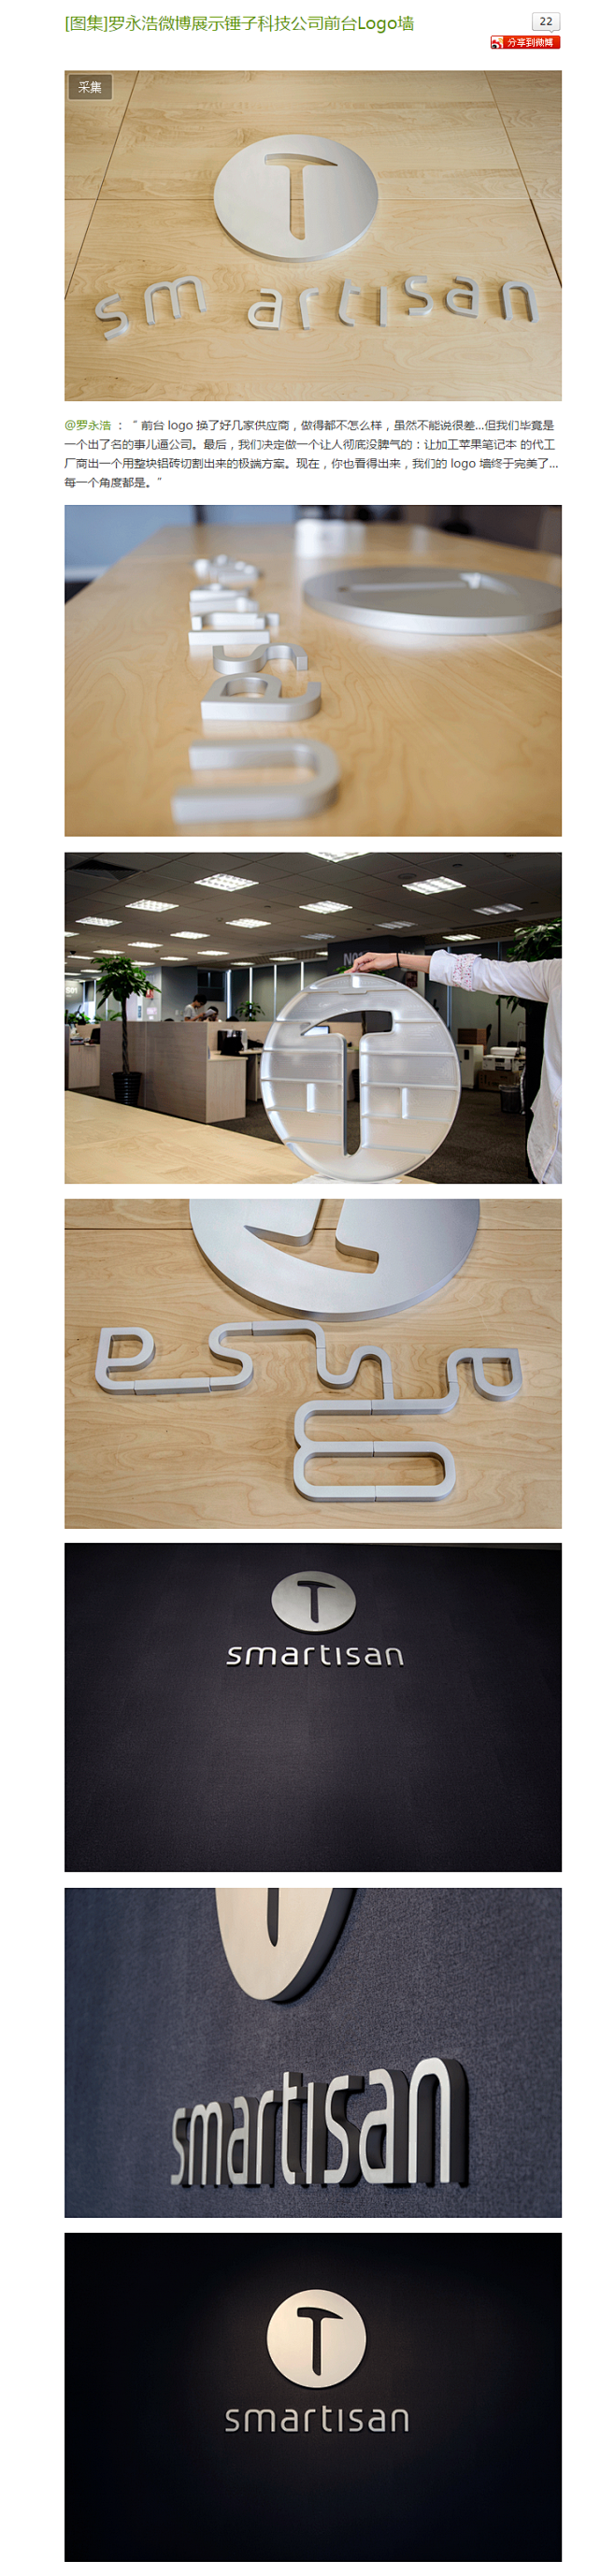 罗永浩微博展示锤子科技公司前台Logo墙